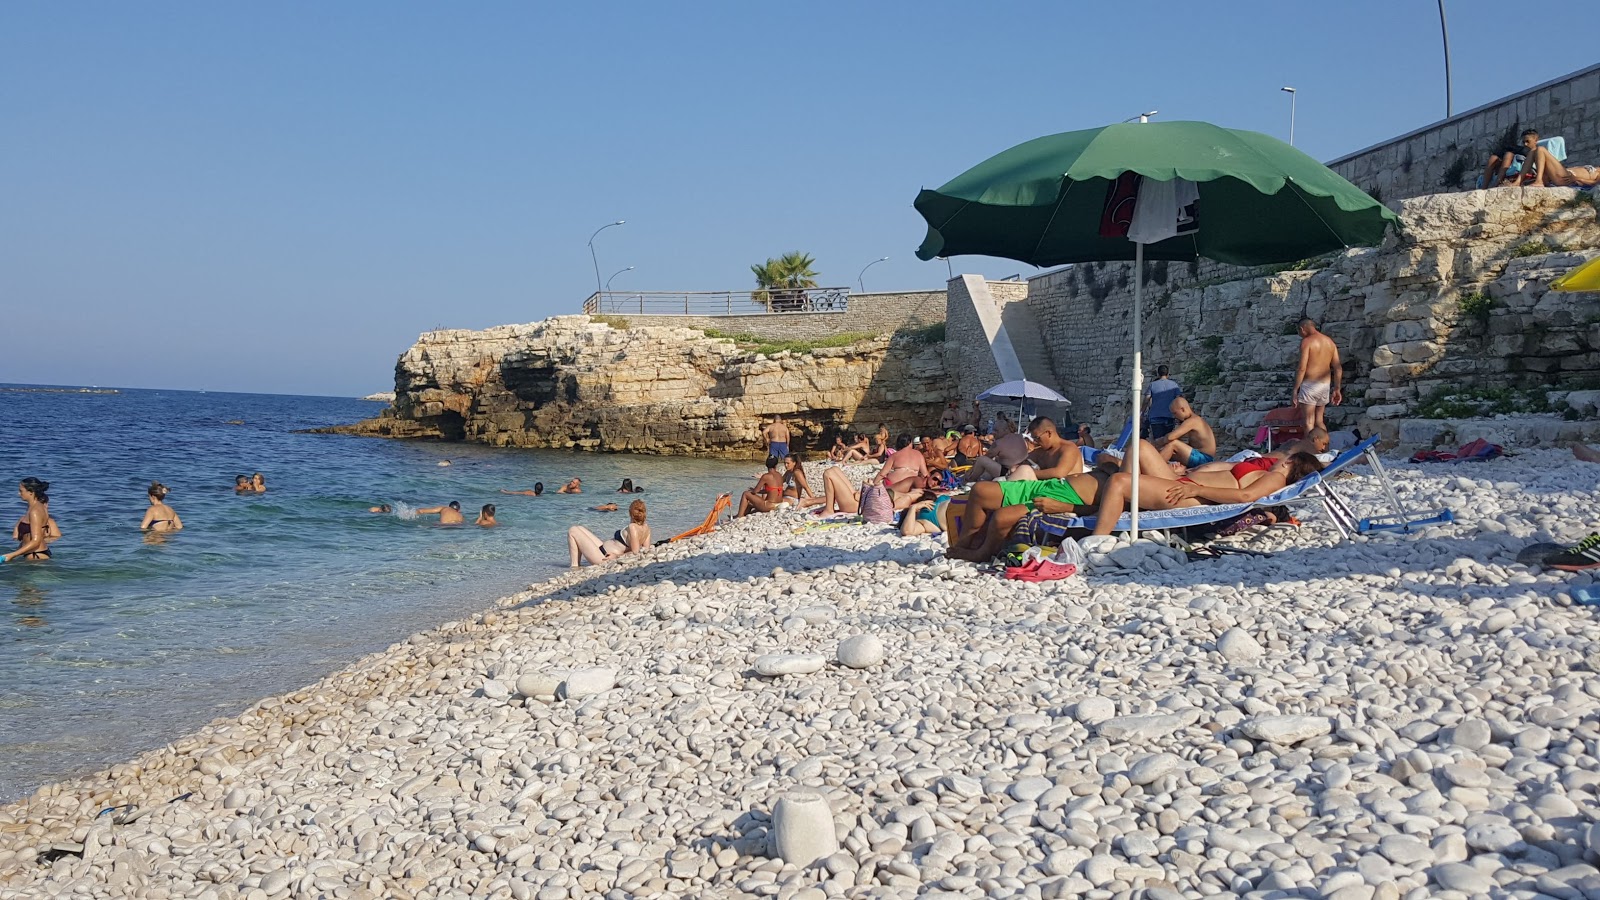 Photo of Spiaggia La Salata with straight shore